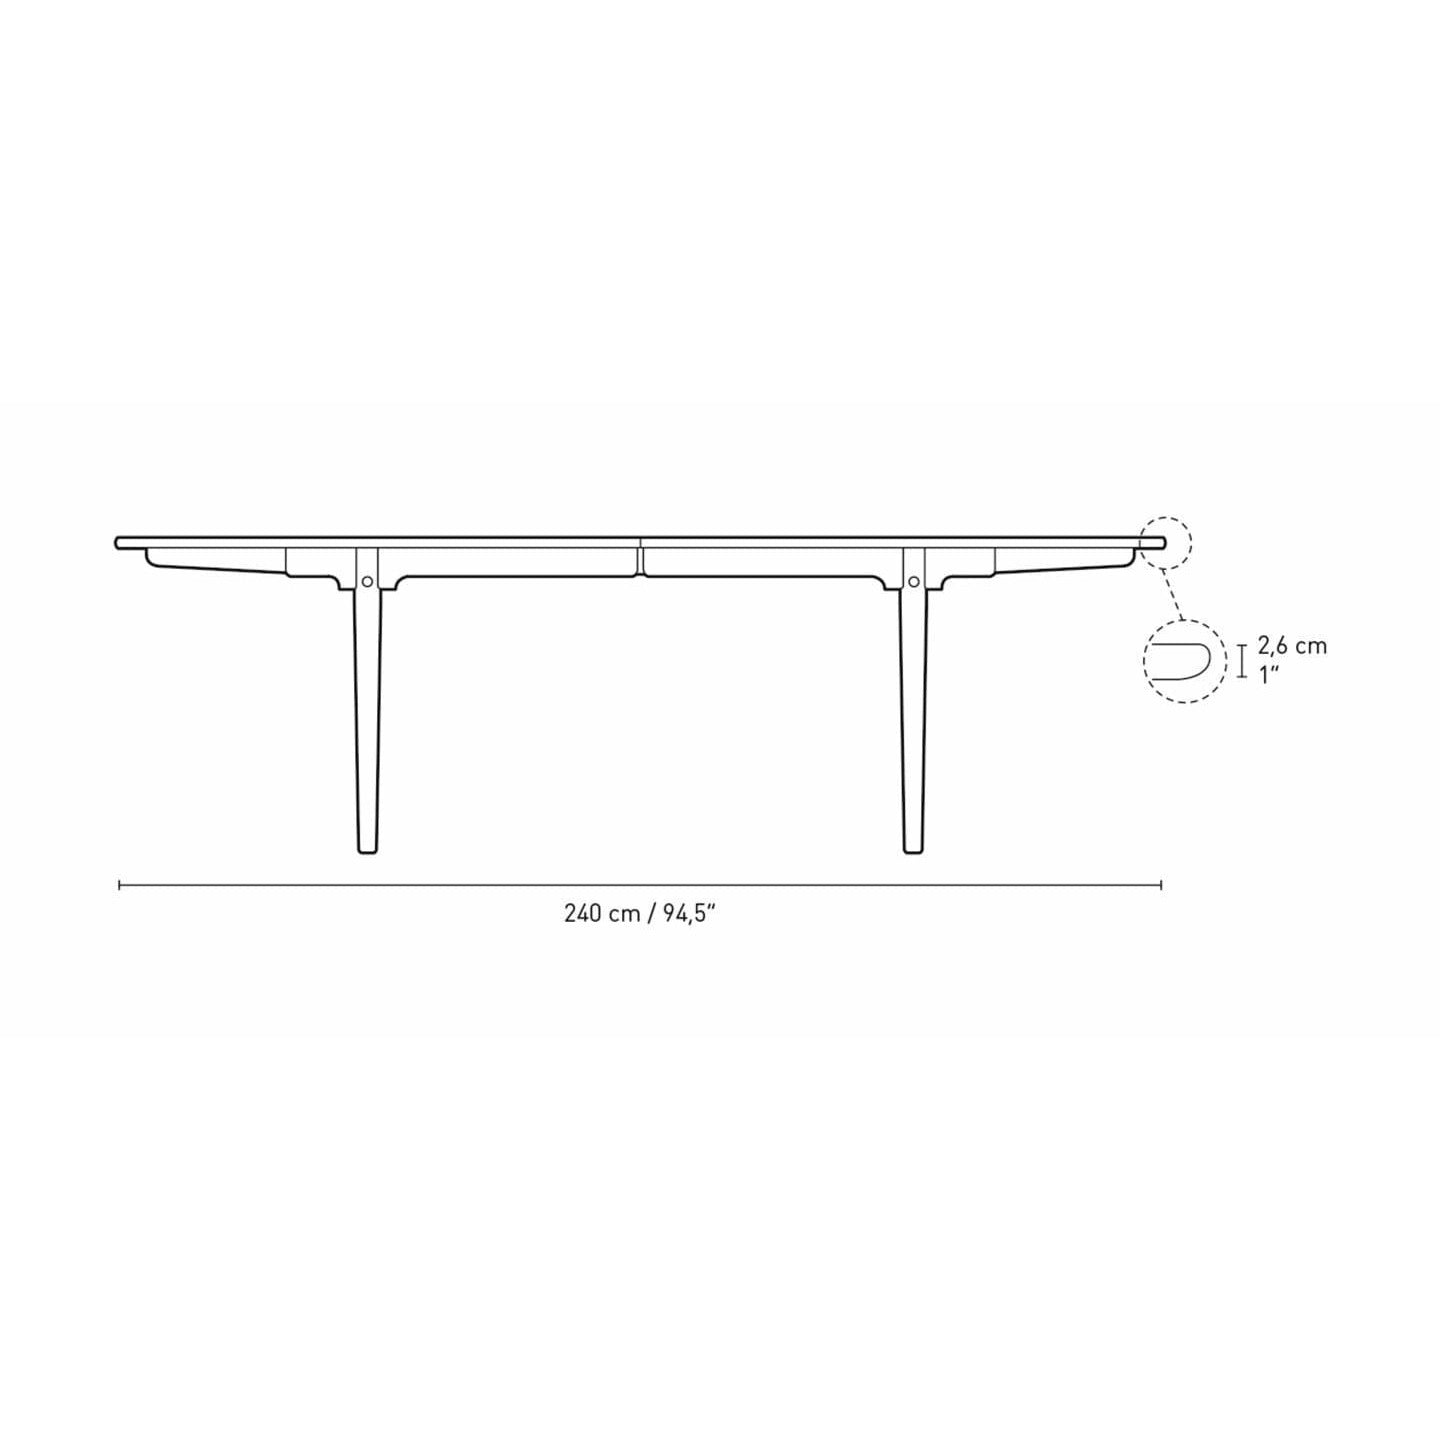 Carl Hansen CH339 matbord designat för 2 utdragbara plattor, ekoljad